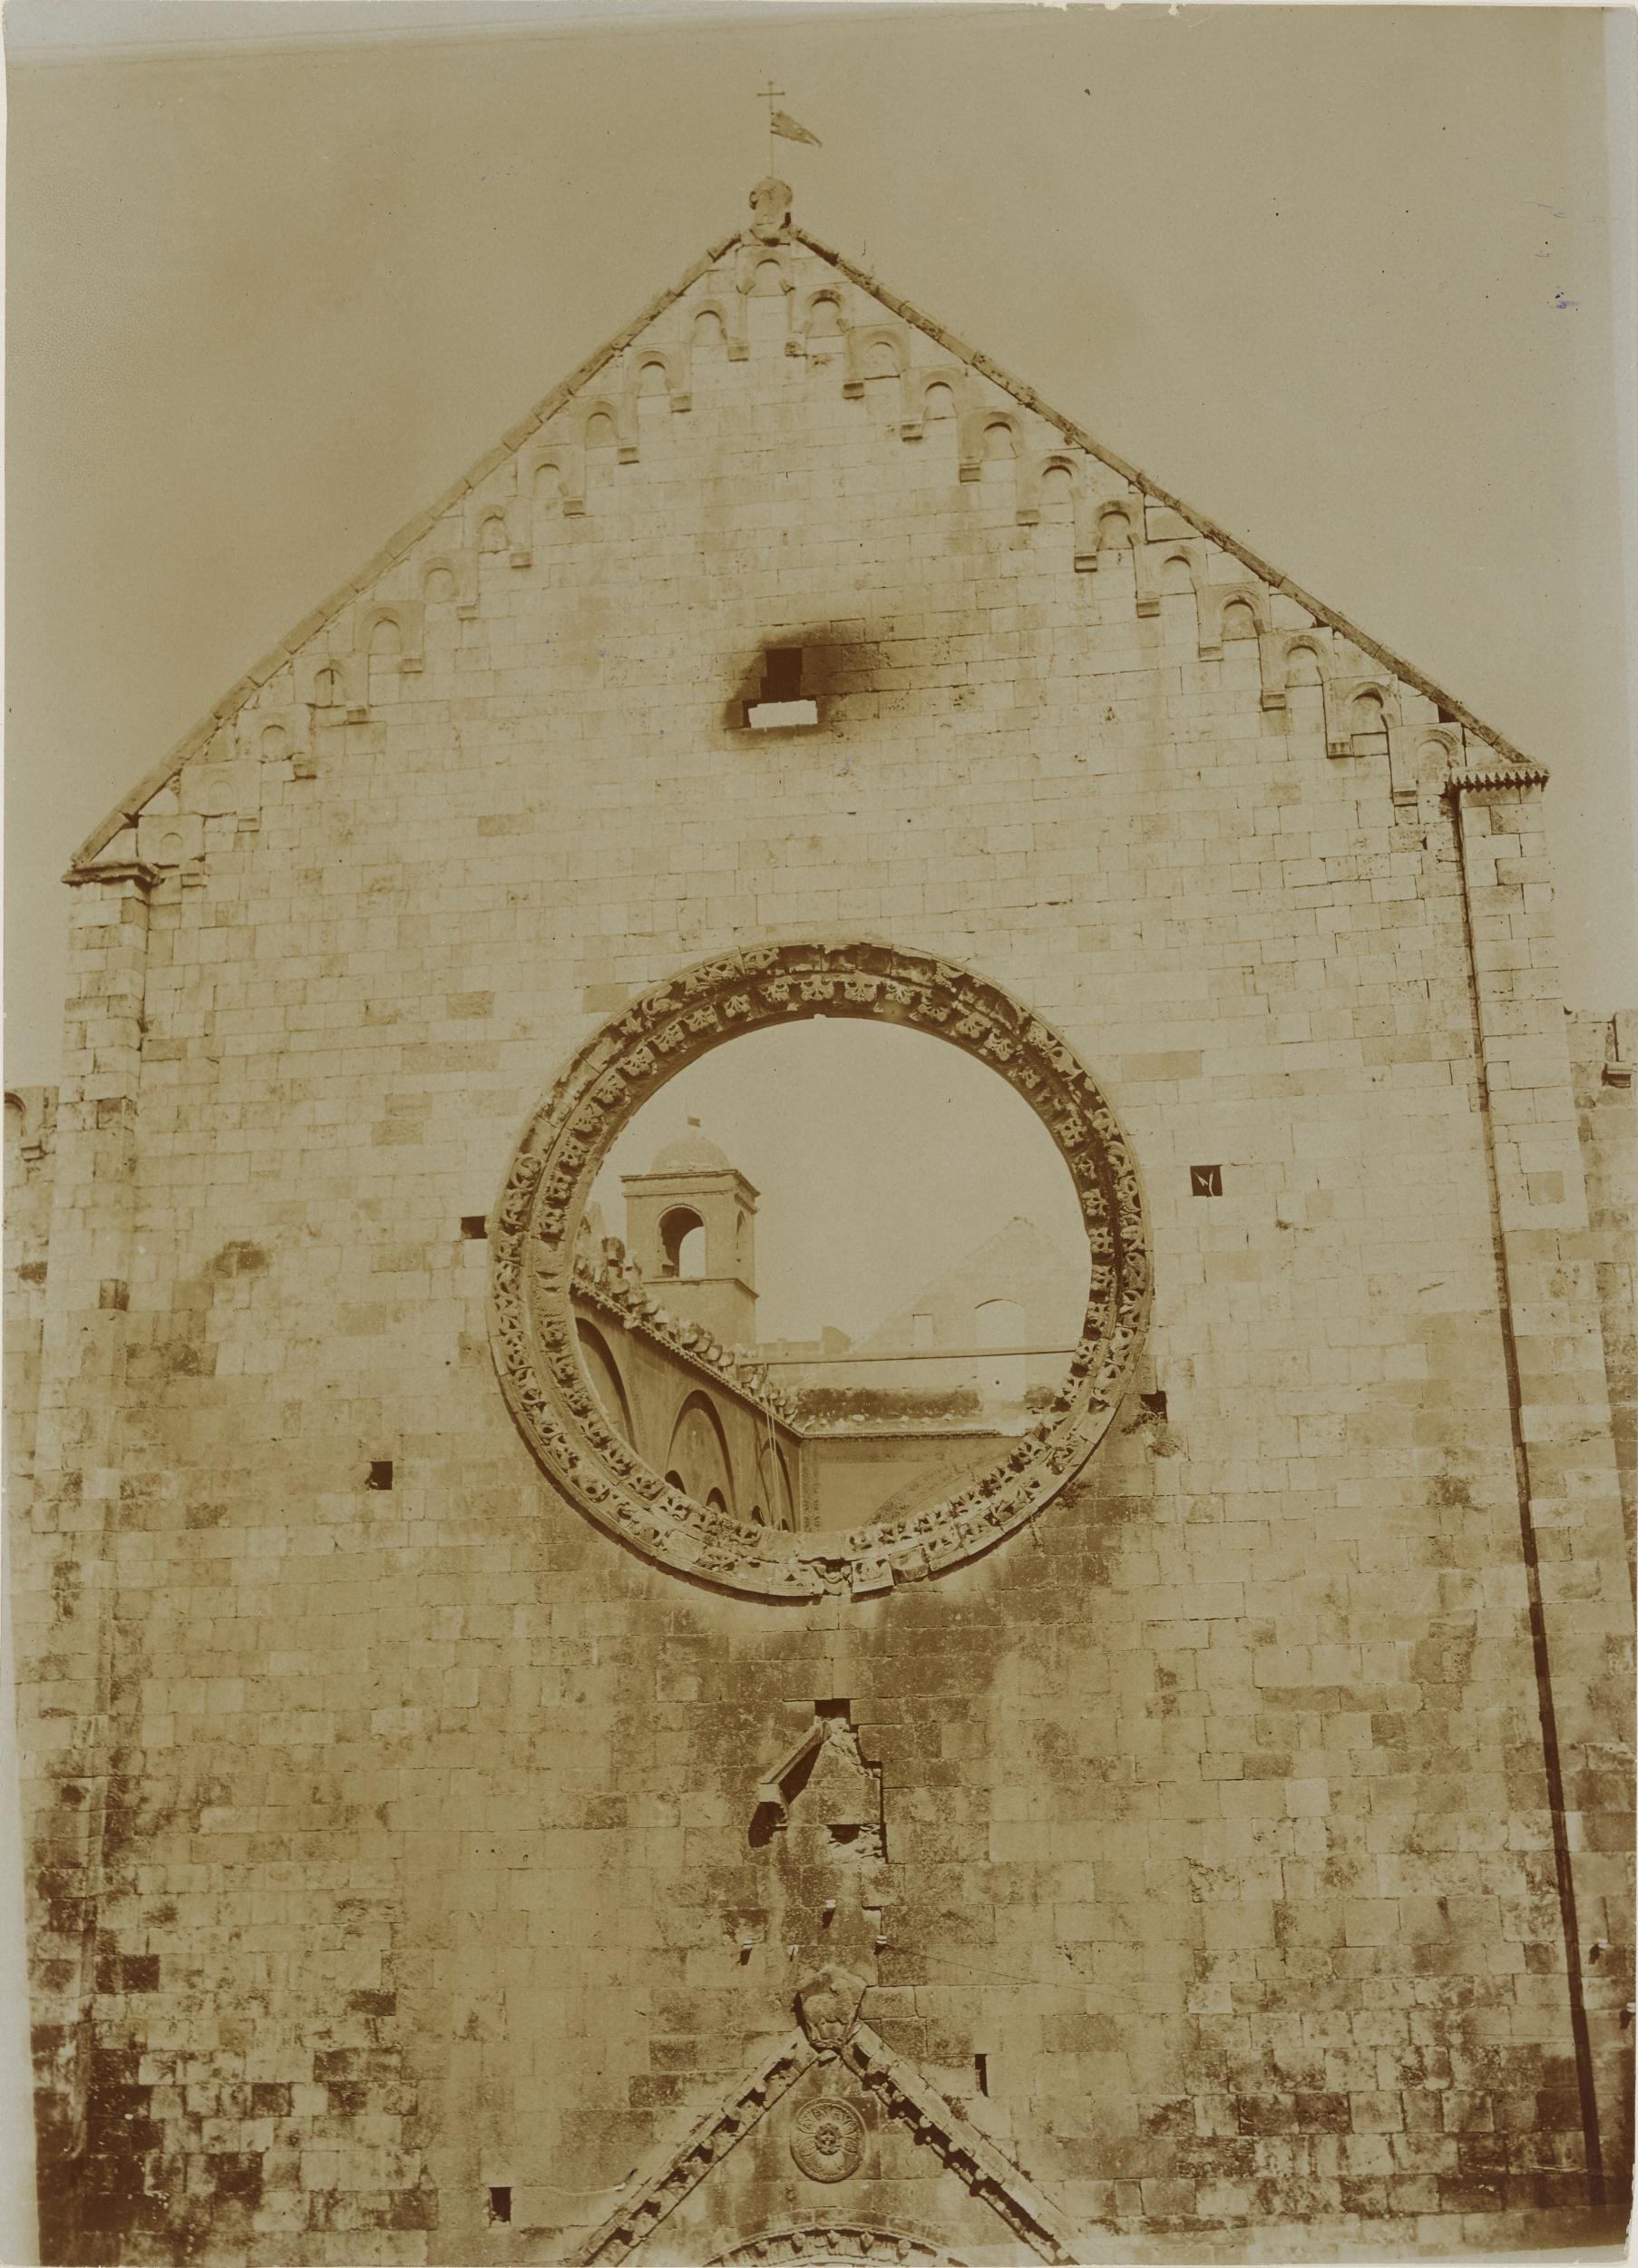 Fotografo non identificato, Conversano - Cattedrale, facciata, dopo l'incendio del 1911, 1901-1910, aristotipo, MPI155321